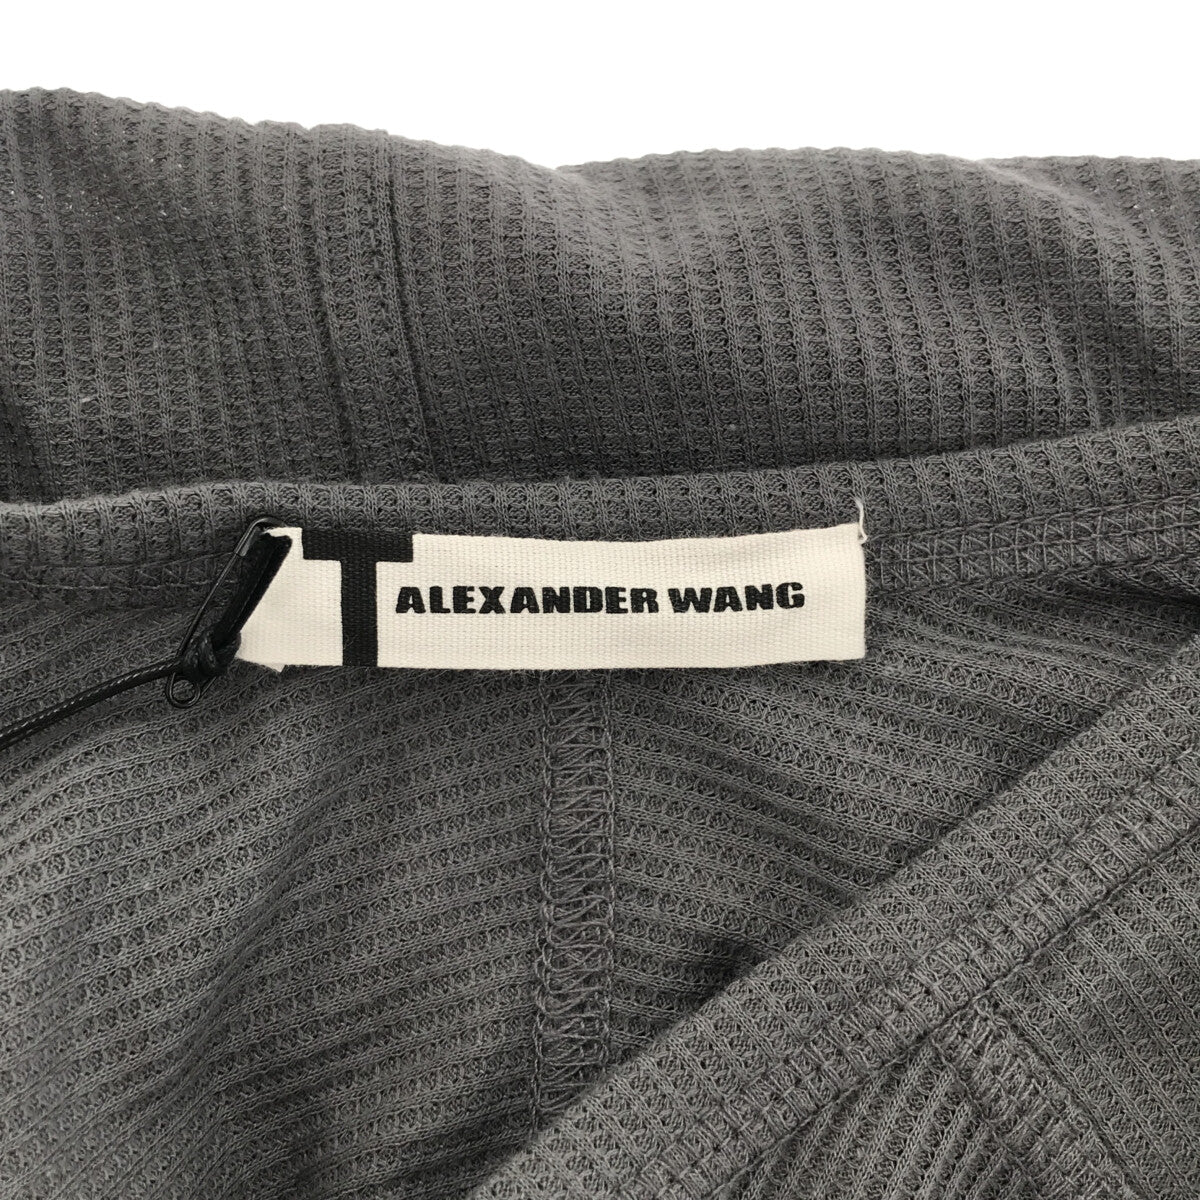 【新品】 T by Alexander Wang / ティーバイアレキサンダーワン | サーマル ジャンプスーツ オールインワン | S | グレー  | レディース